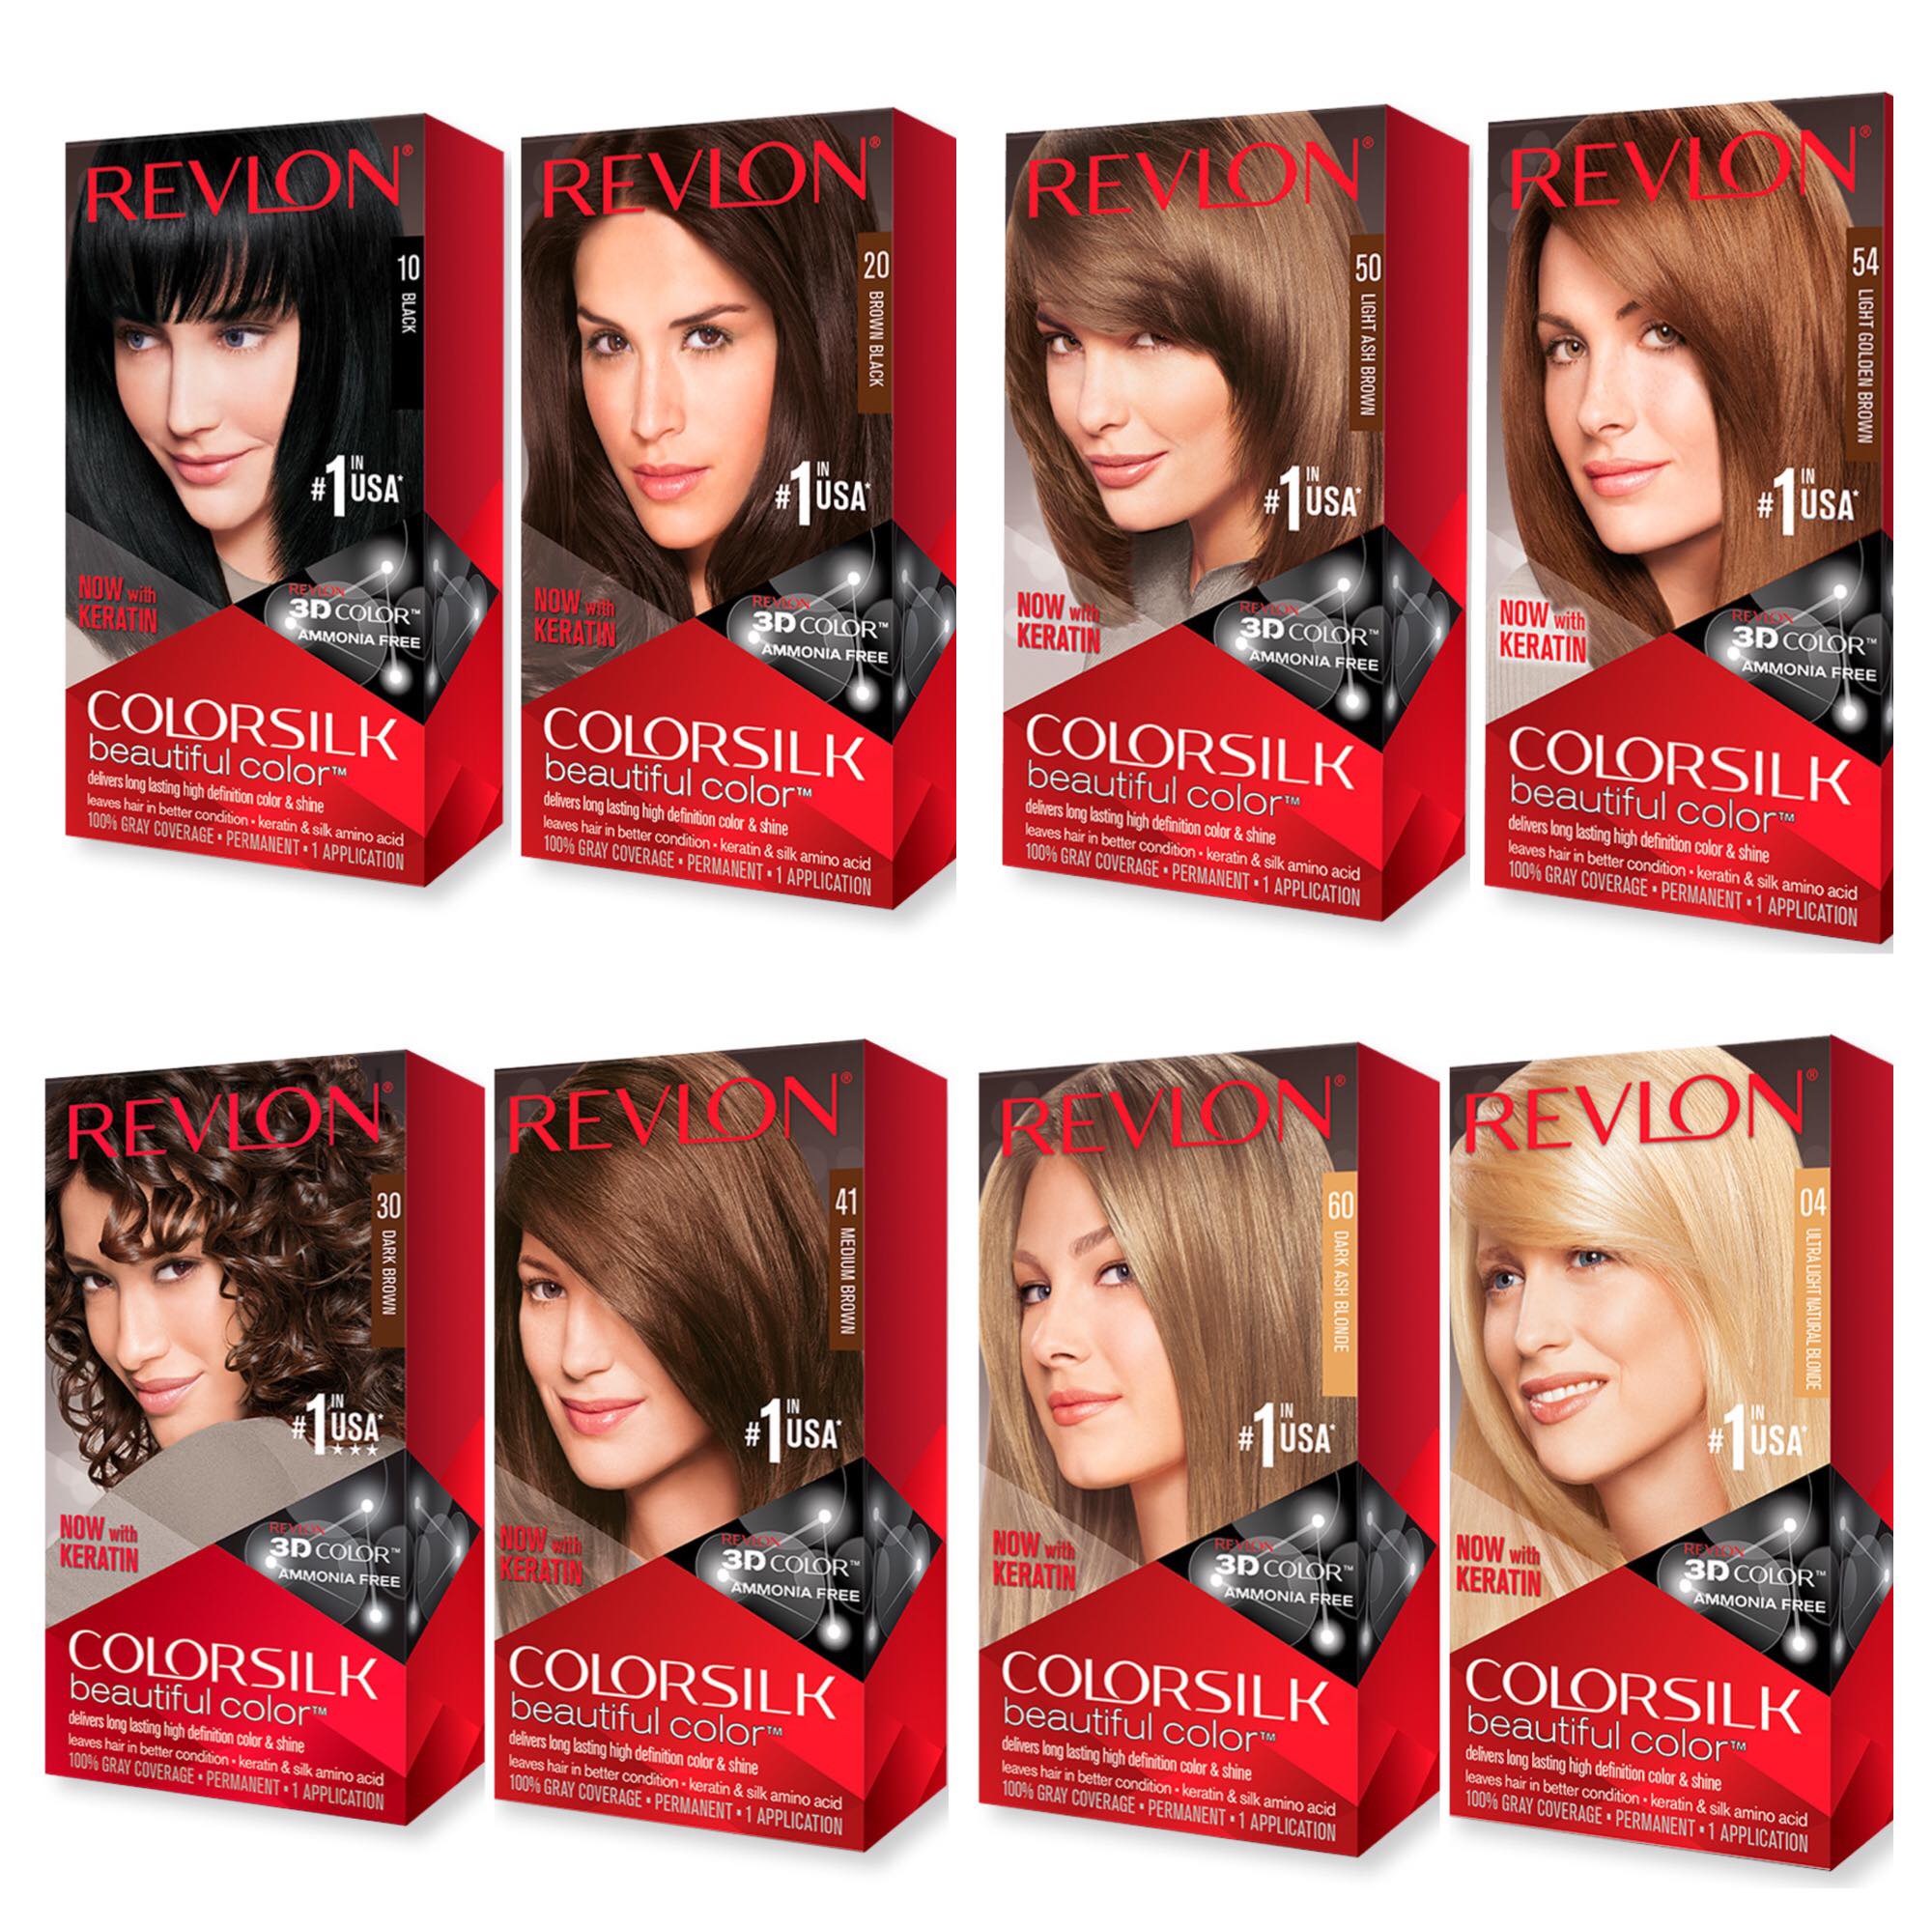 Tạo nên làn tóc đẹp với Revlon Colorsilk – sản phẩm nổi tiếng với chất lượng đỉnh cao. Đừng bỏ lỡ cơ hội trải nghiệm kết quả tuyệt vời và cảm nhận sự khác biệt rõ rệt trên mái tóc của bạn với sản phẩm này.